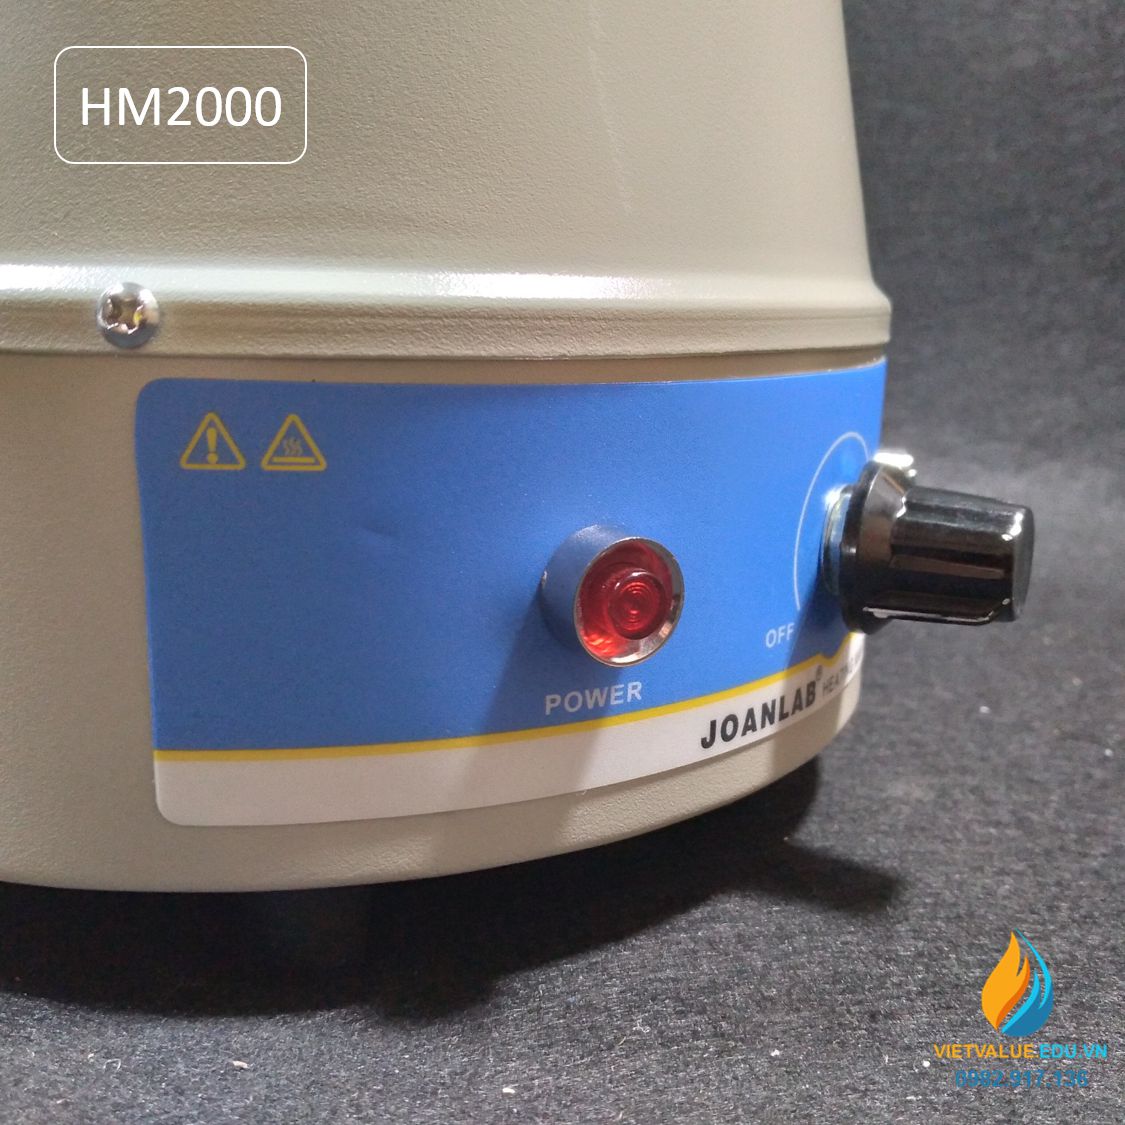 Máy ủ nhiệt JOAN LAB HM2000, điều chỉnh núm vặn, dung tích ủ 2000ml